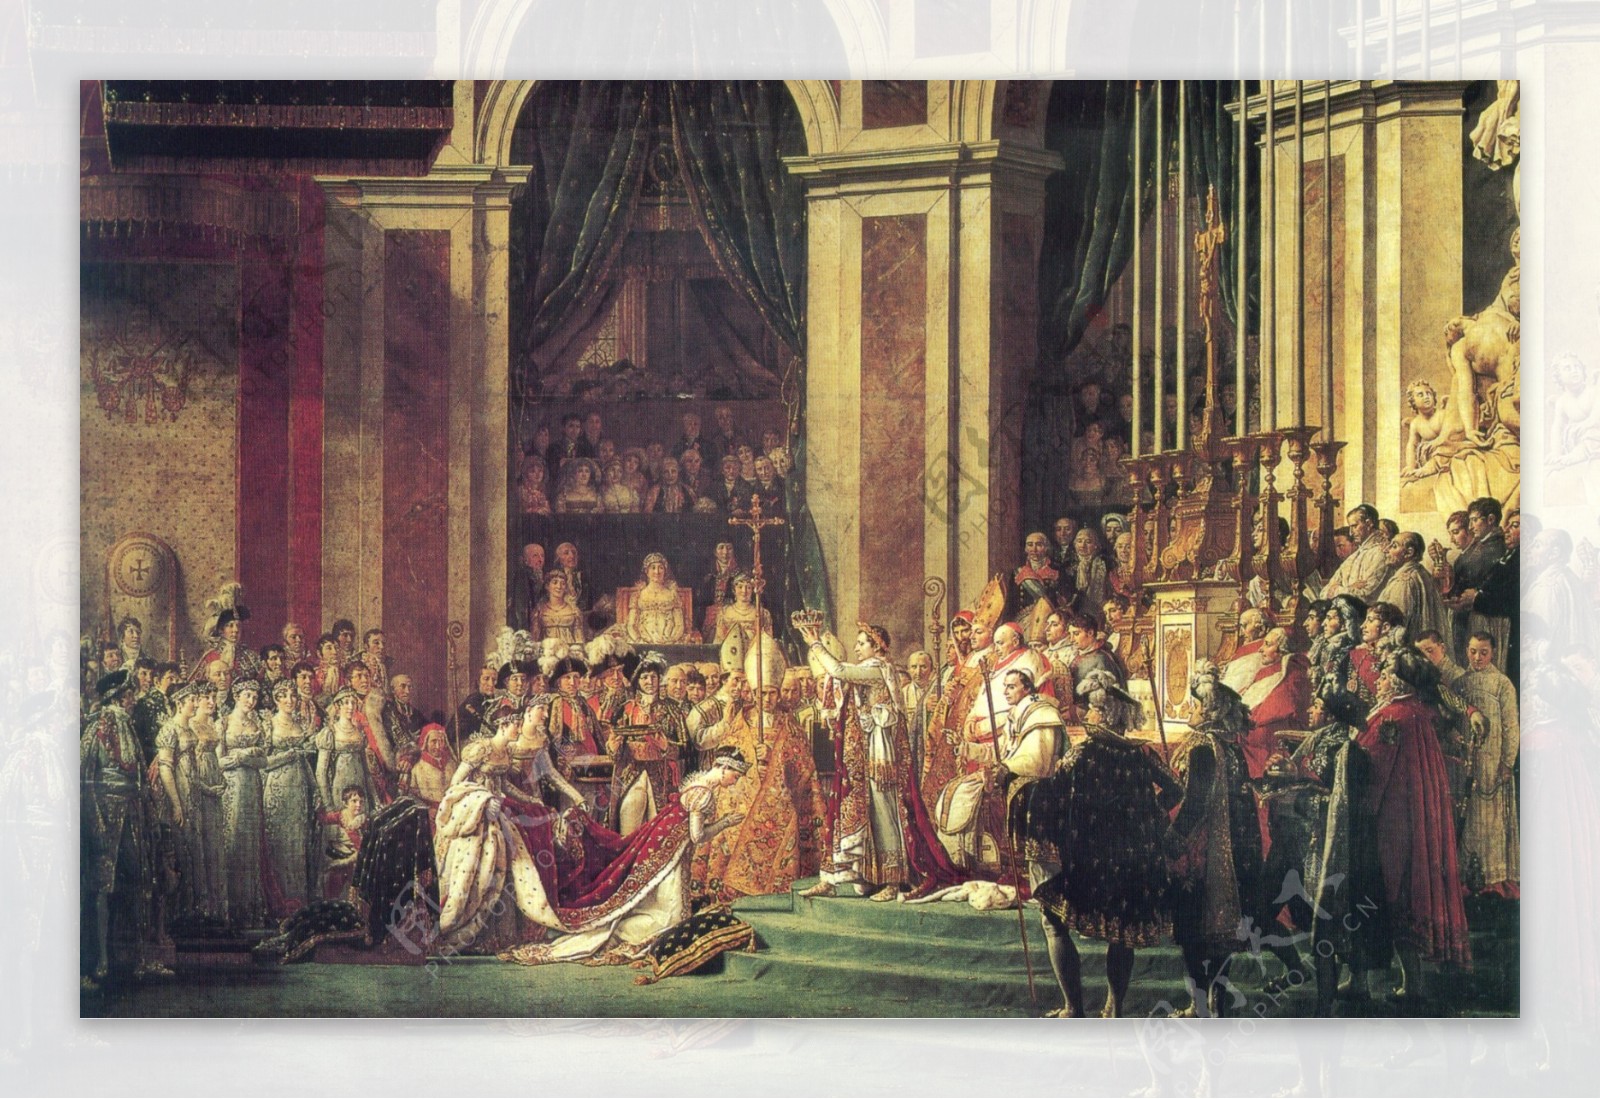 拿破仑在巴黎圣母院的加冕典礼图片